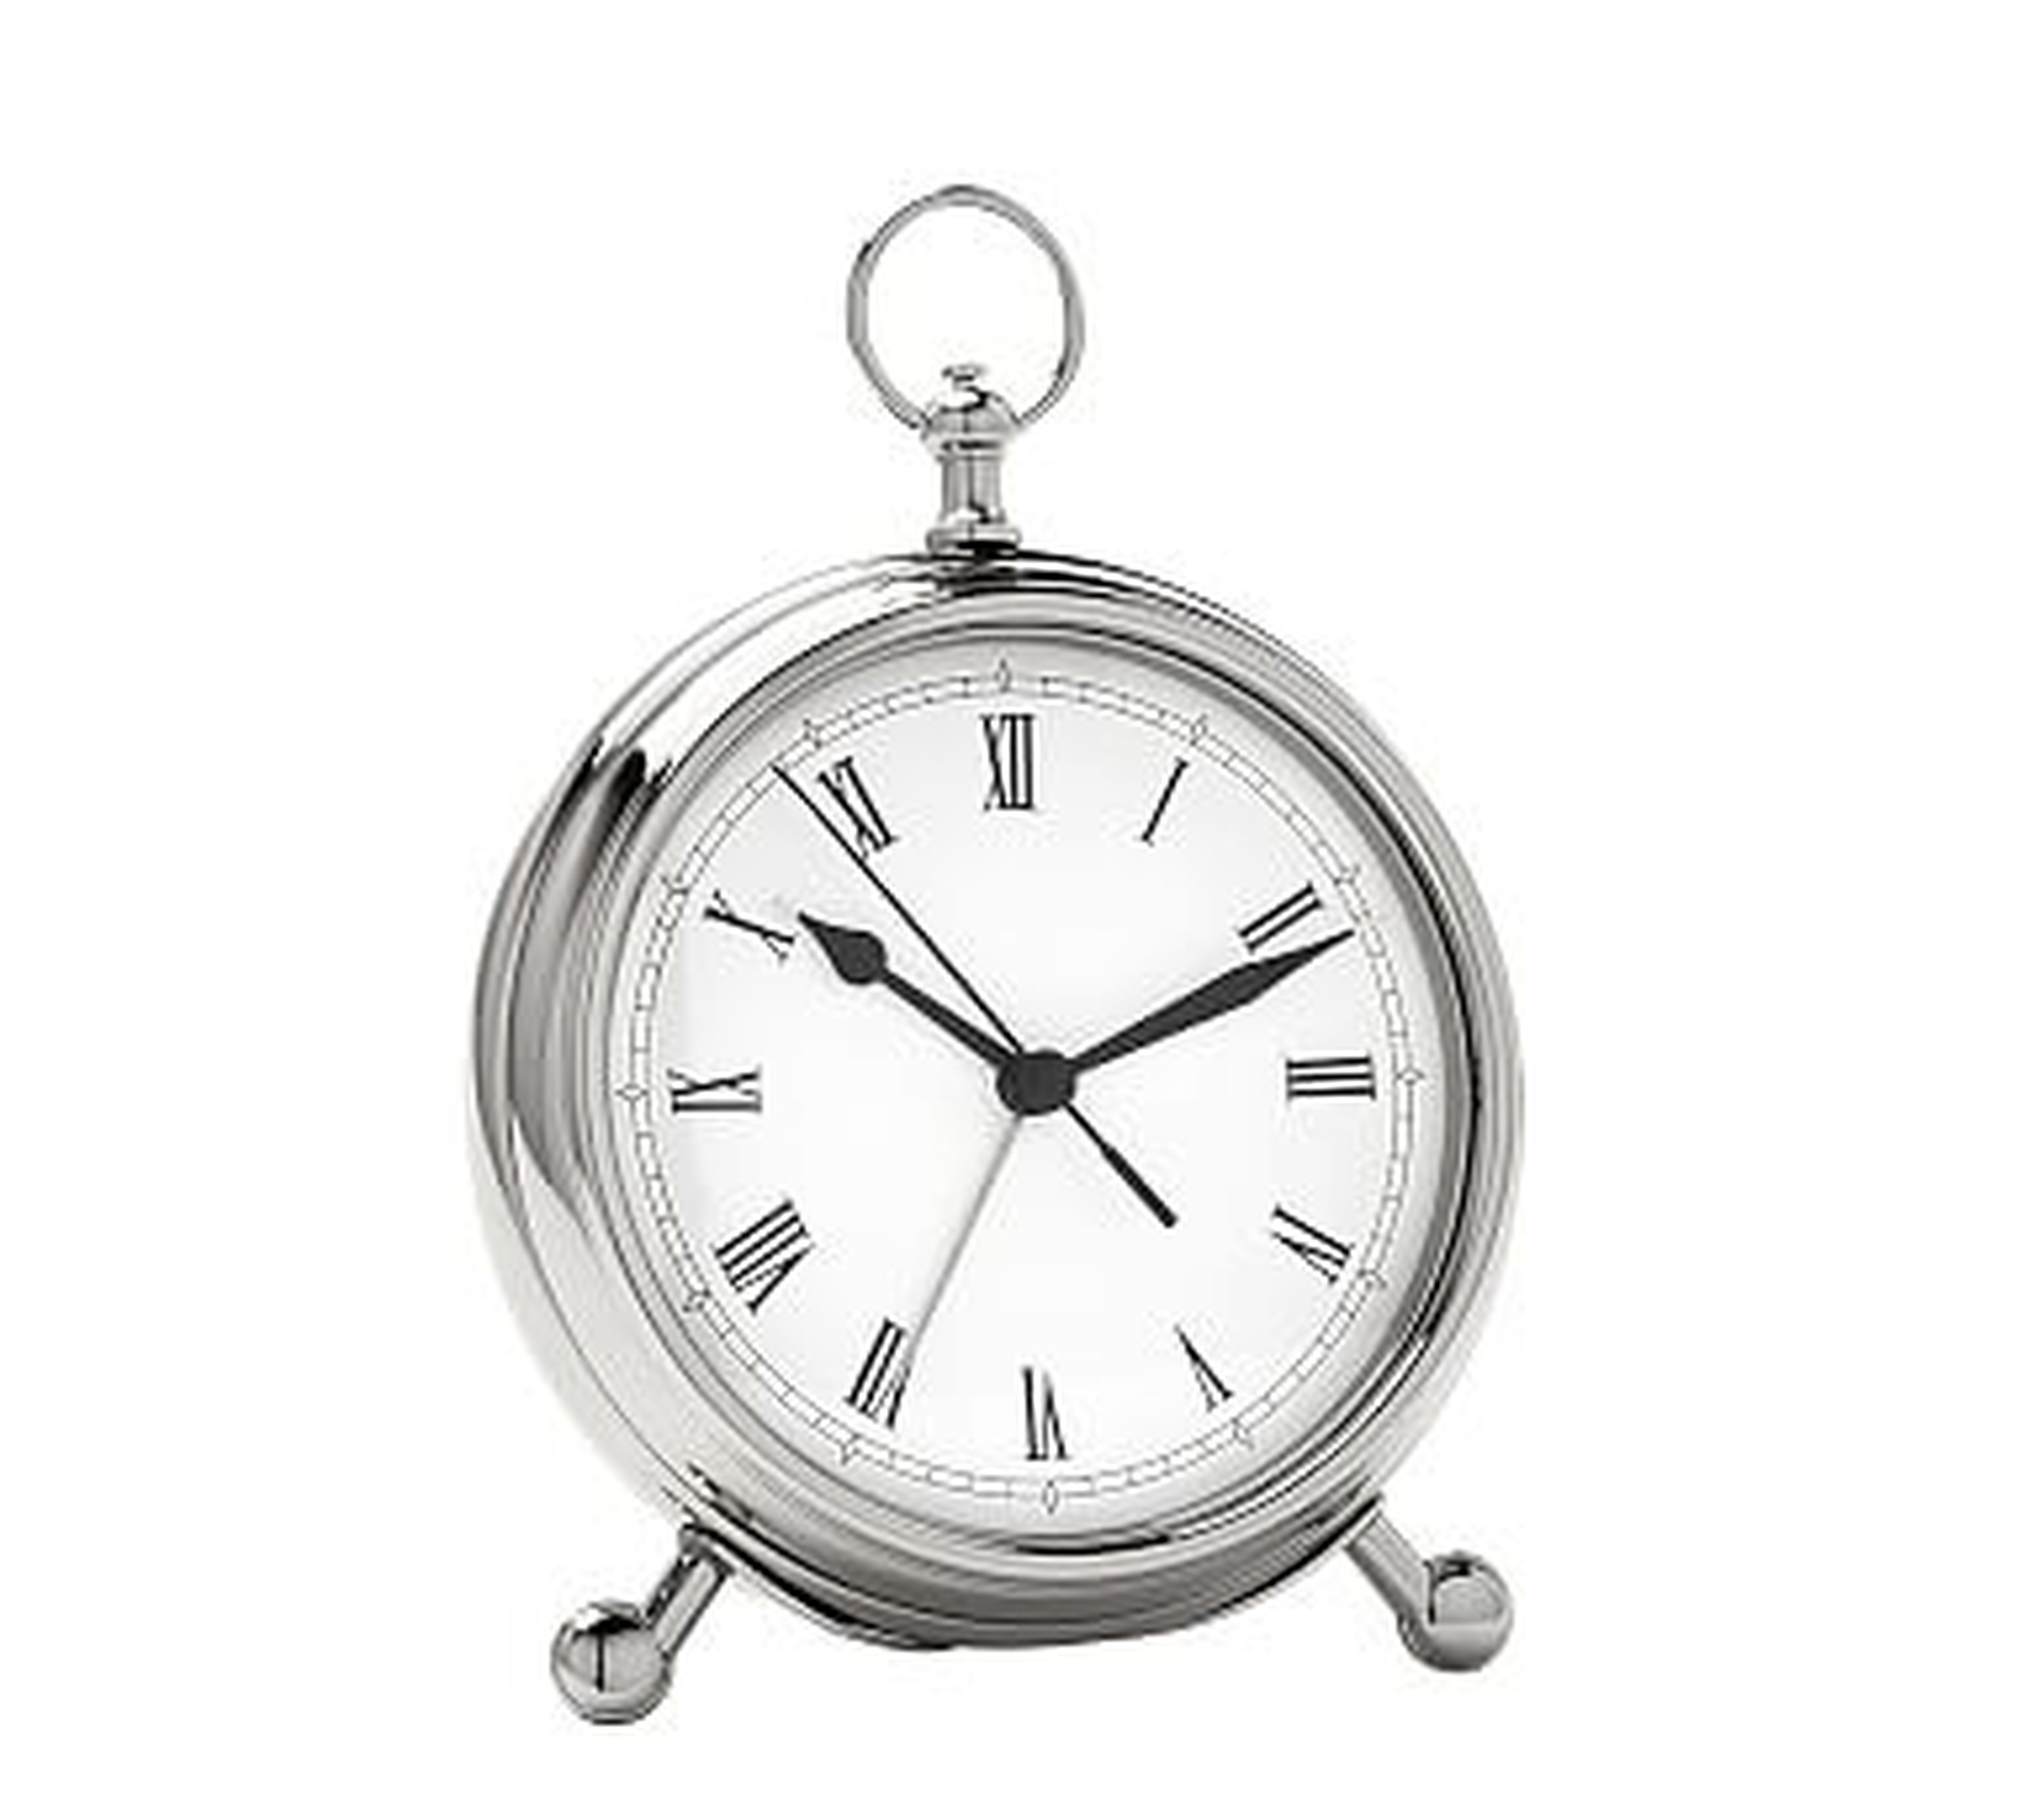 Pocket Watch Clock, Medium, Nickel finish - Pottery Barn